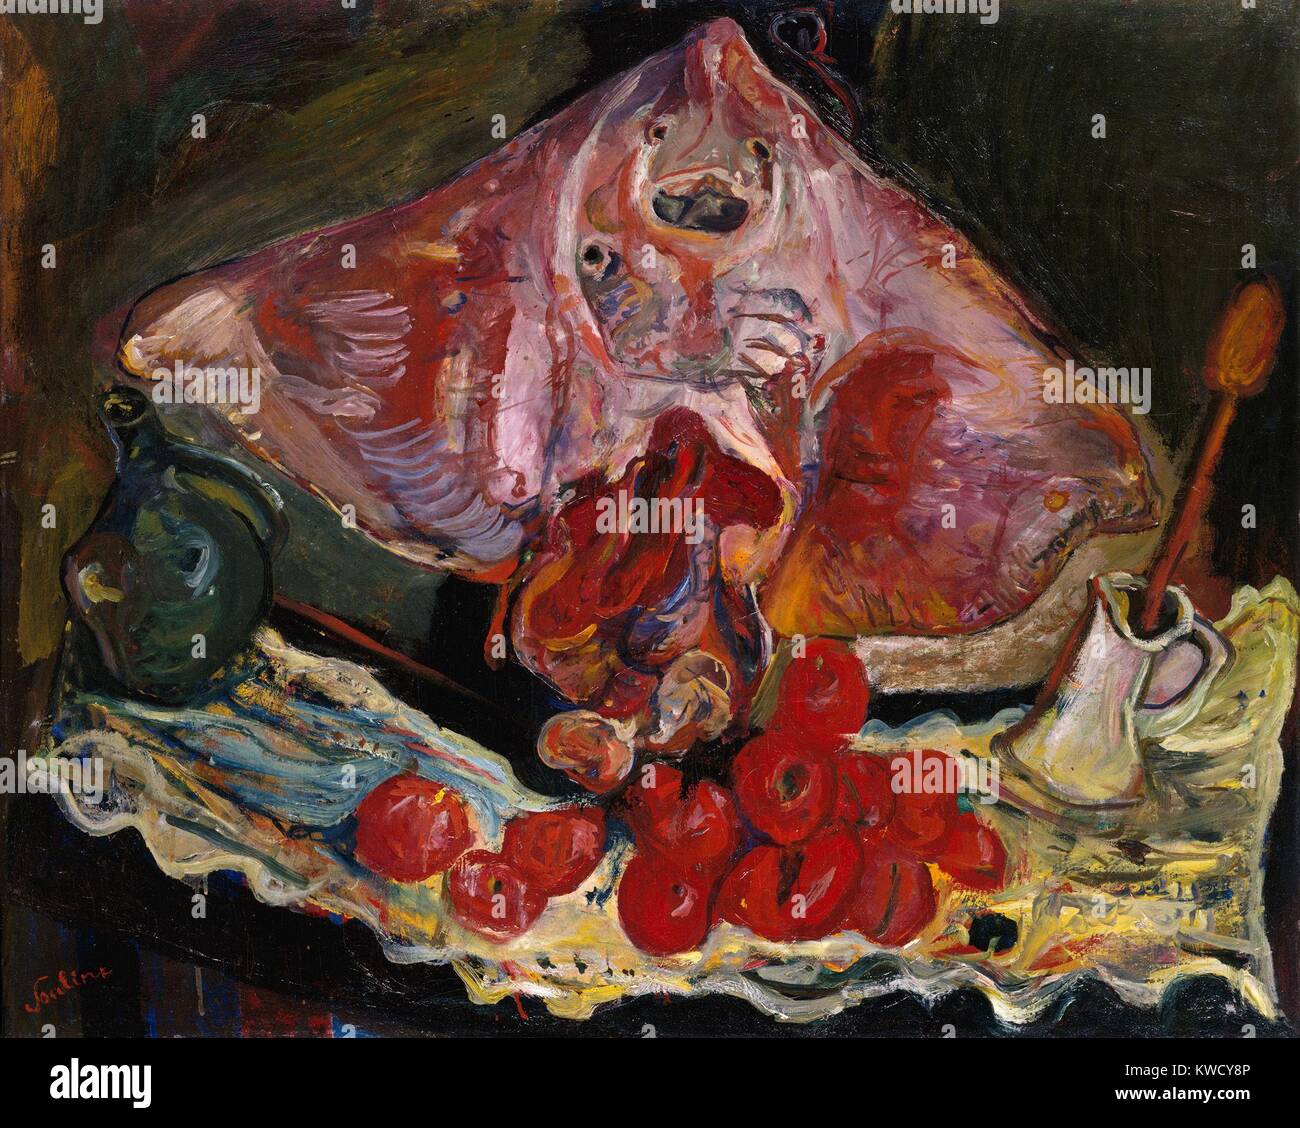 Nature morte avec Rayfish, par Chaïm Soutine, 1924, huile sur toile expressionniste Français Russe. Dans cette toile, Soutine Chardins référencé le Rayfish du 18e siècle. Il a peint l'animal mort, avec une épaisseur de pinceau de liquide dans une nature morte avec un BSLOC 2017 dr ( 5 151) Banque D'Images